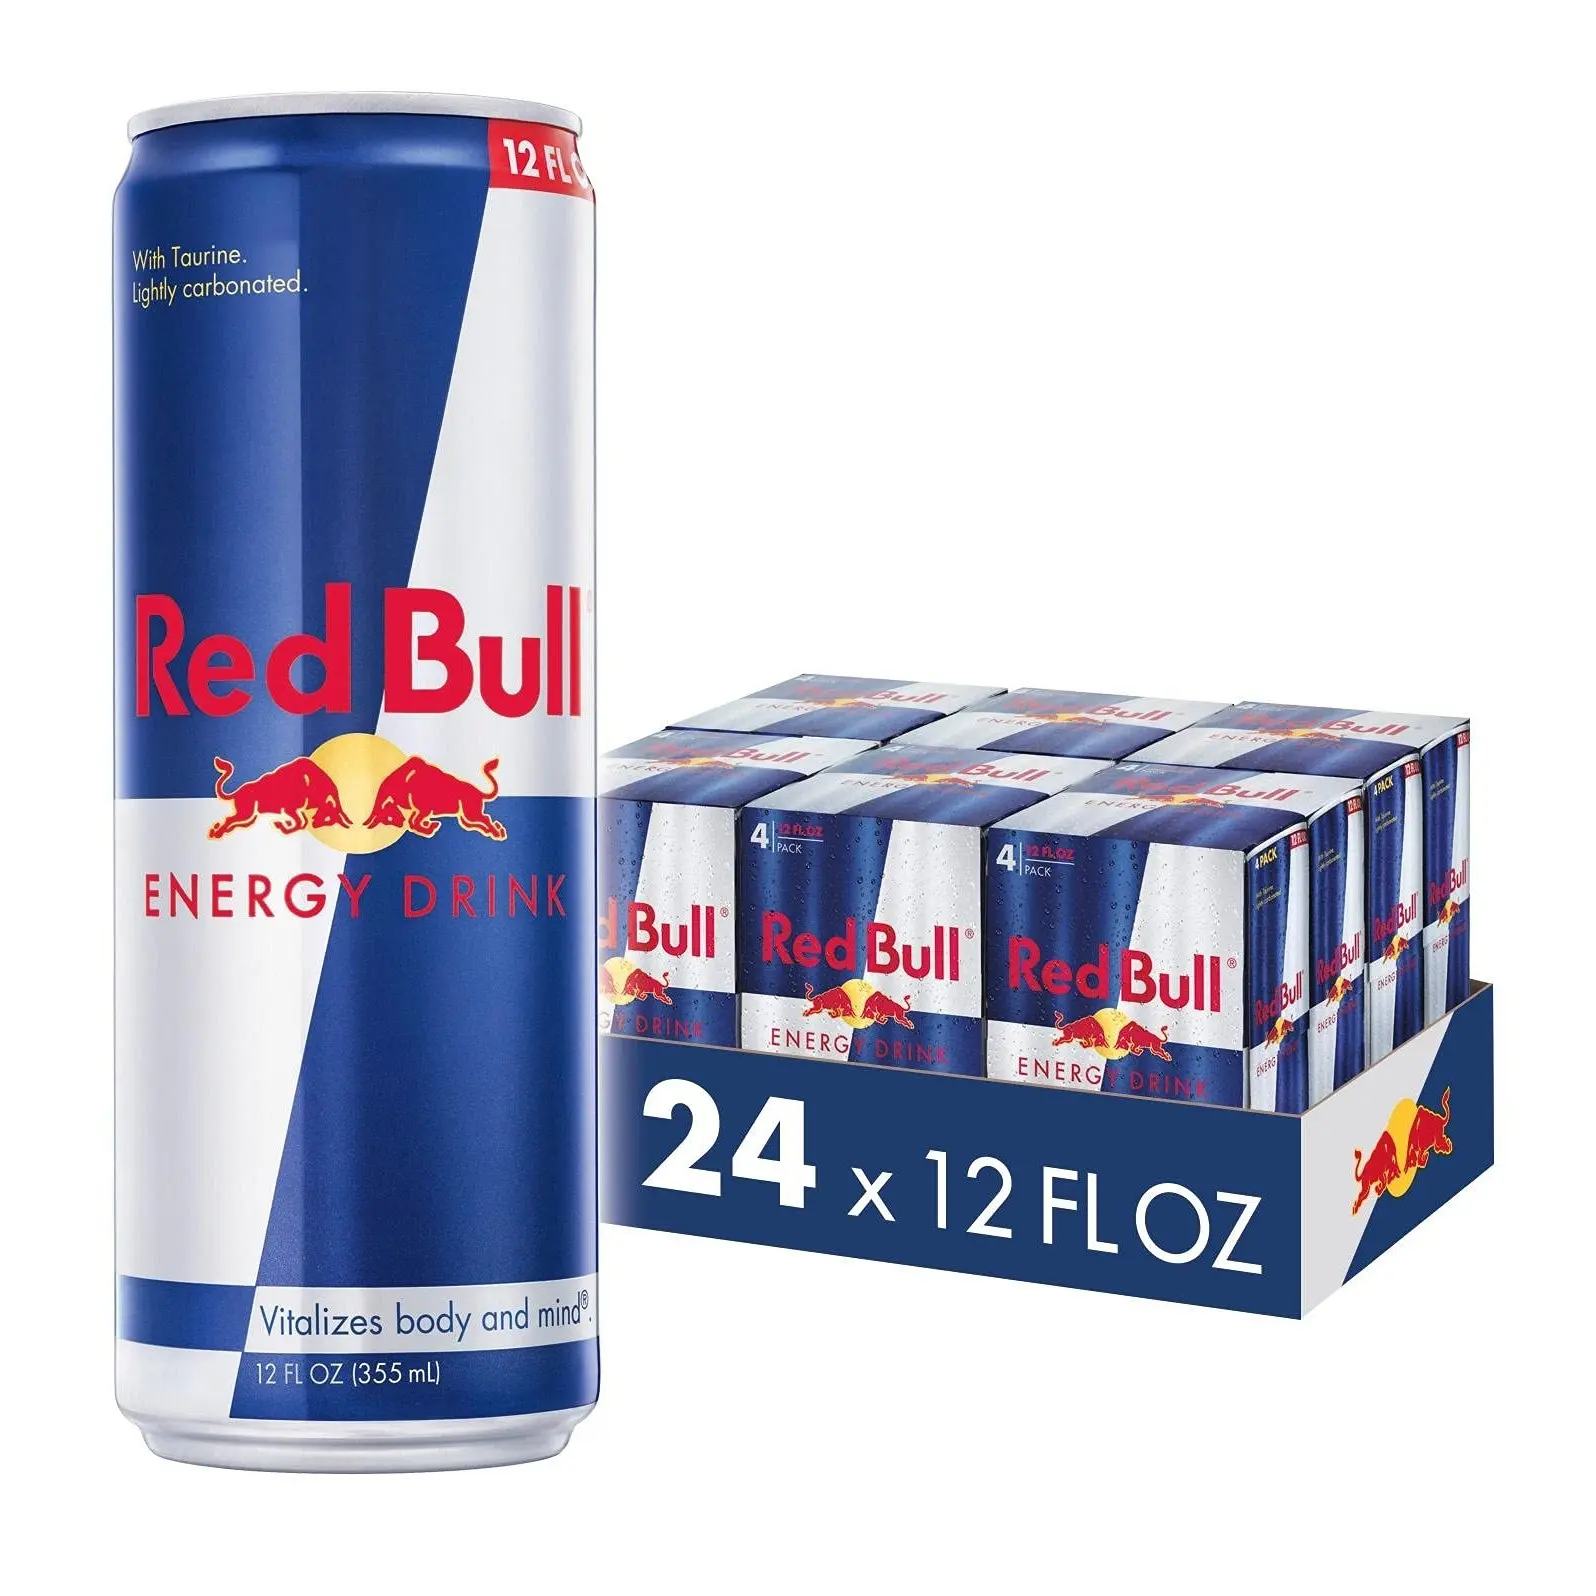 Indirimli fiyatlarla toptan Red Bull enerji içeceği